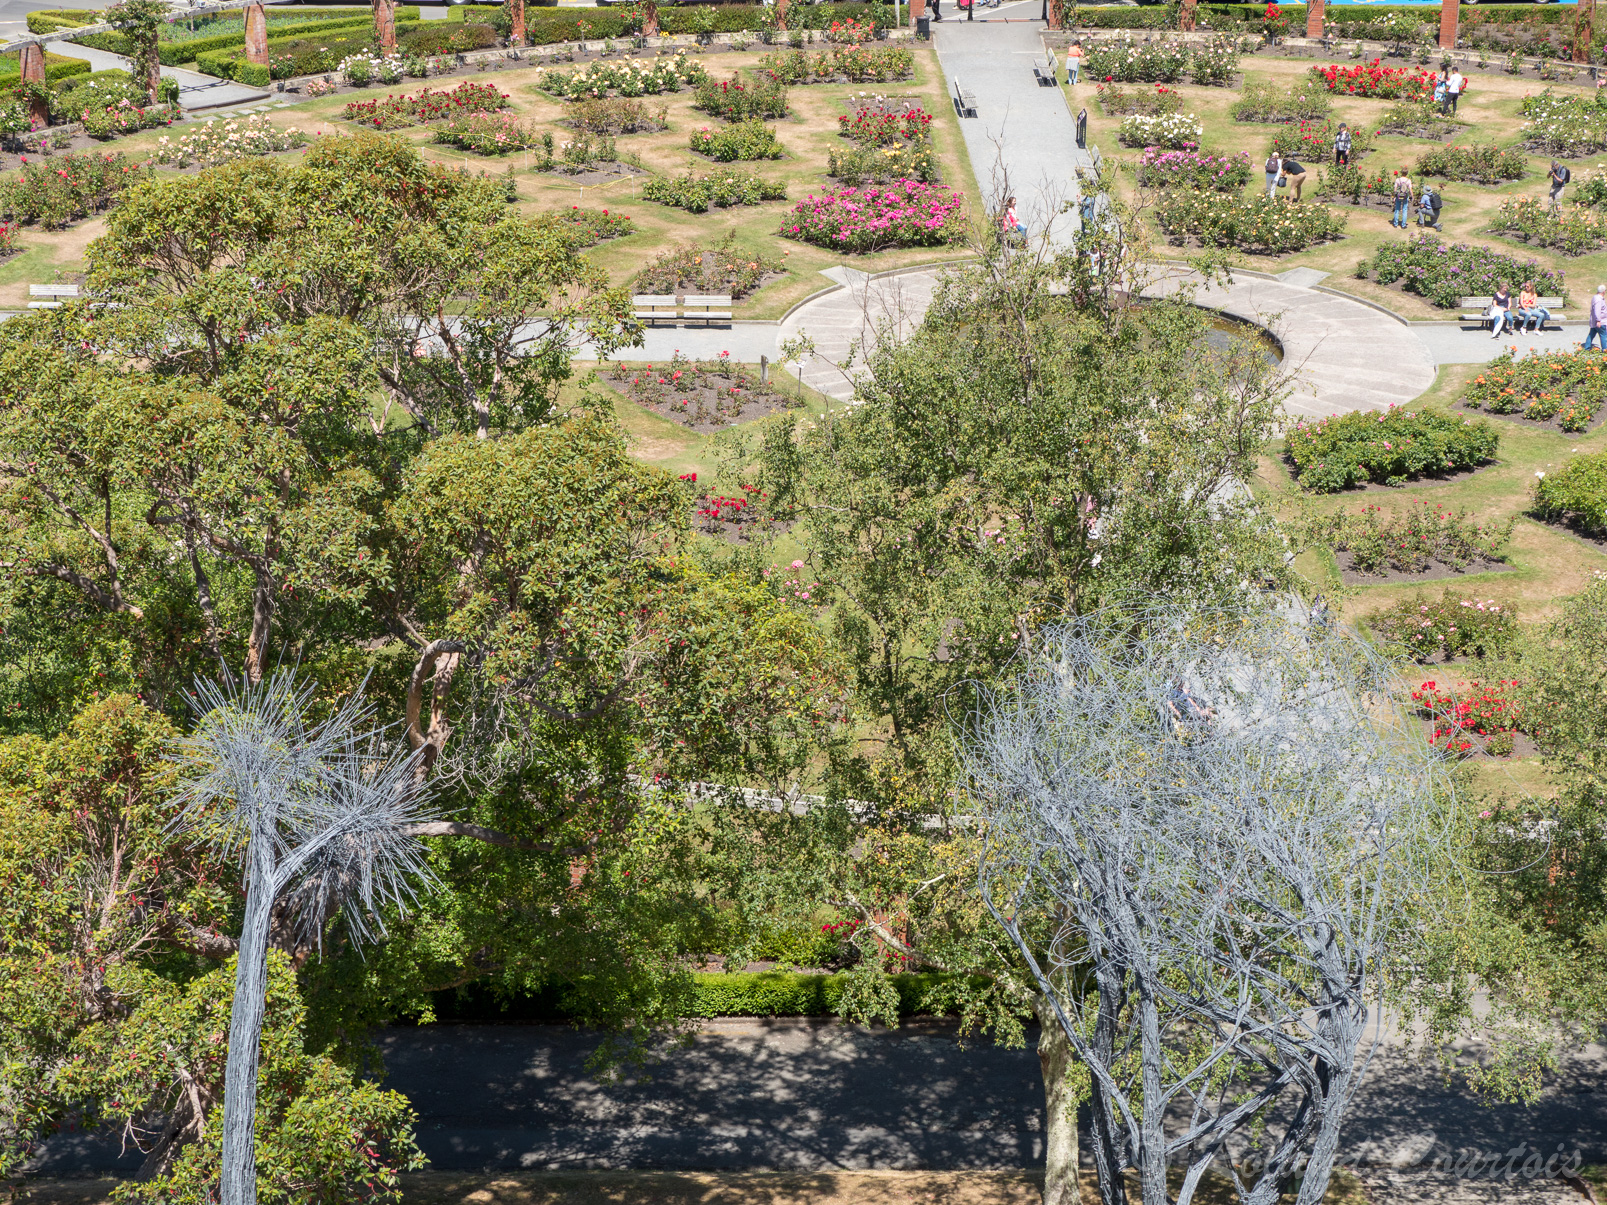 Le jardin botanique de Wellington contient un grand espace dédié aux roses.